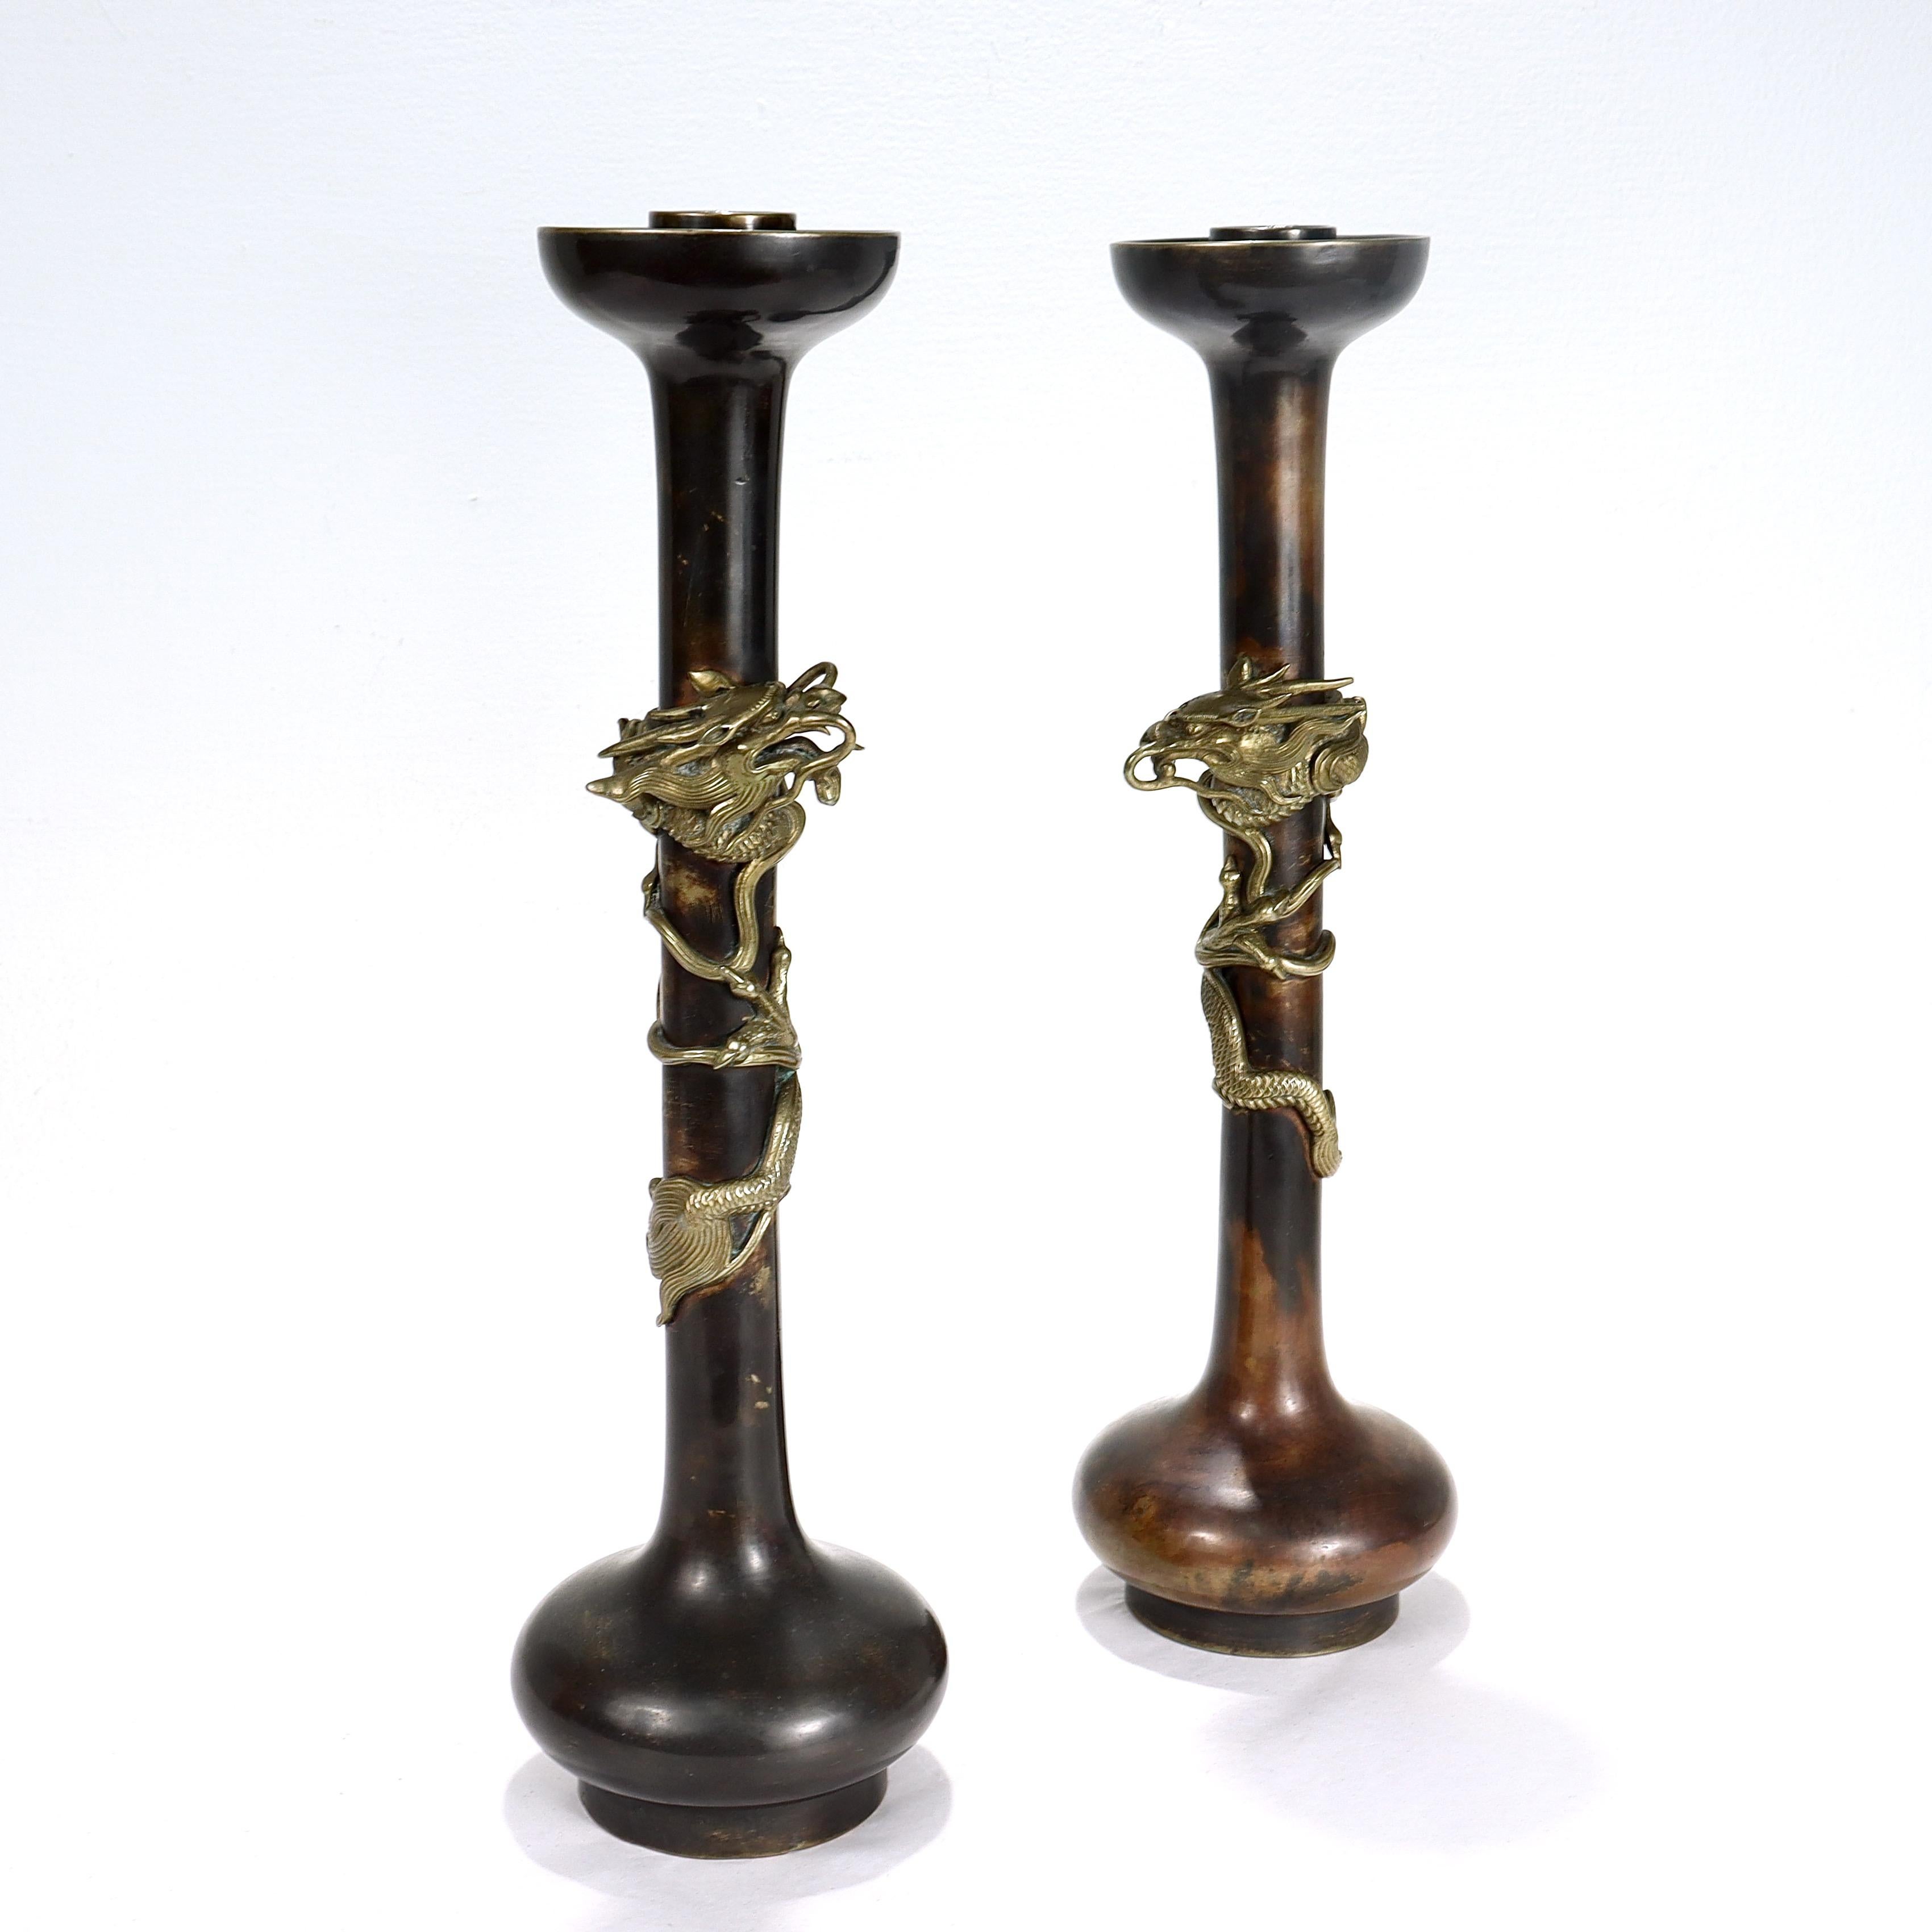 Une belle paire de chandeliers japonais anciens en bronze.

Chacune est décorée d'un dragon appliqué et enroulé sur son col mince et allongé, sous une lèvre évasée et une coupe en forme de bougie, et au-dessus d'un pied et d'une base en forme de